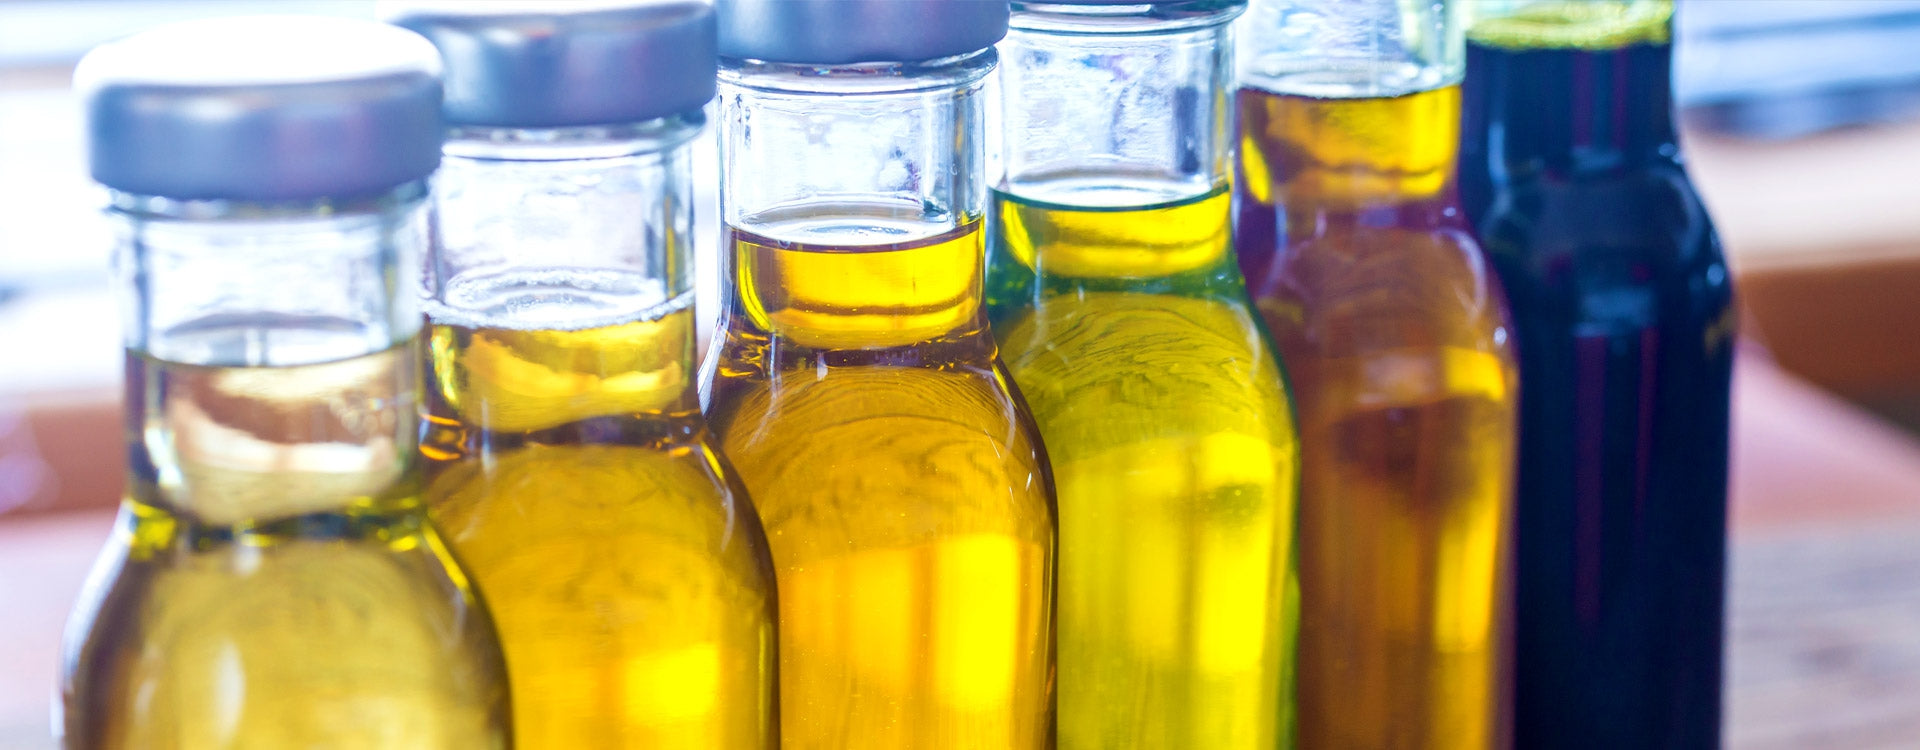 Quelles différences entre huiles végétales et huiles essentielles ?